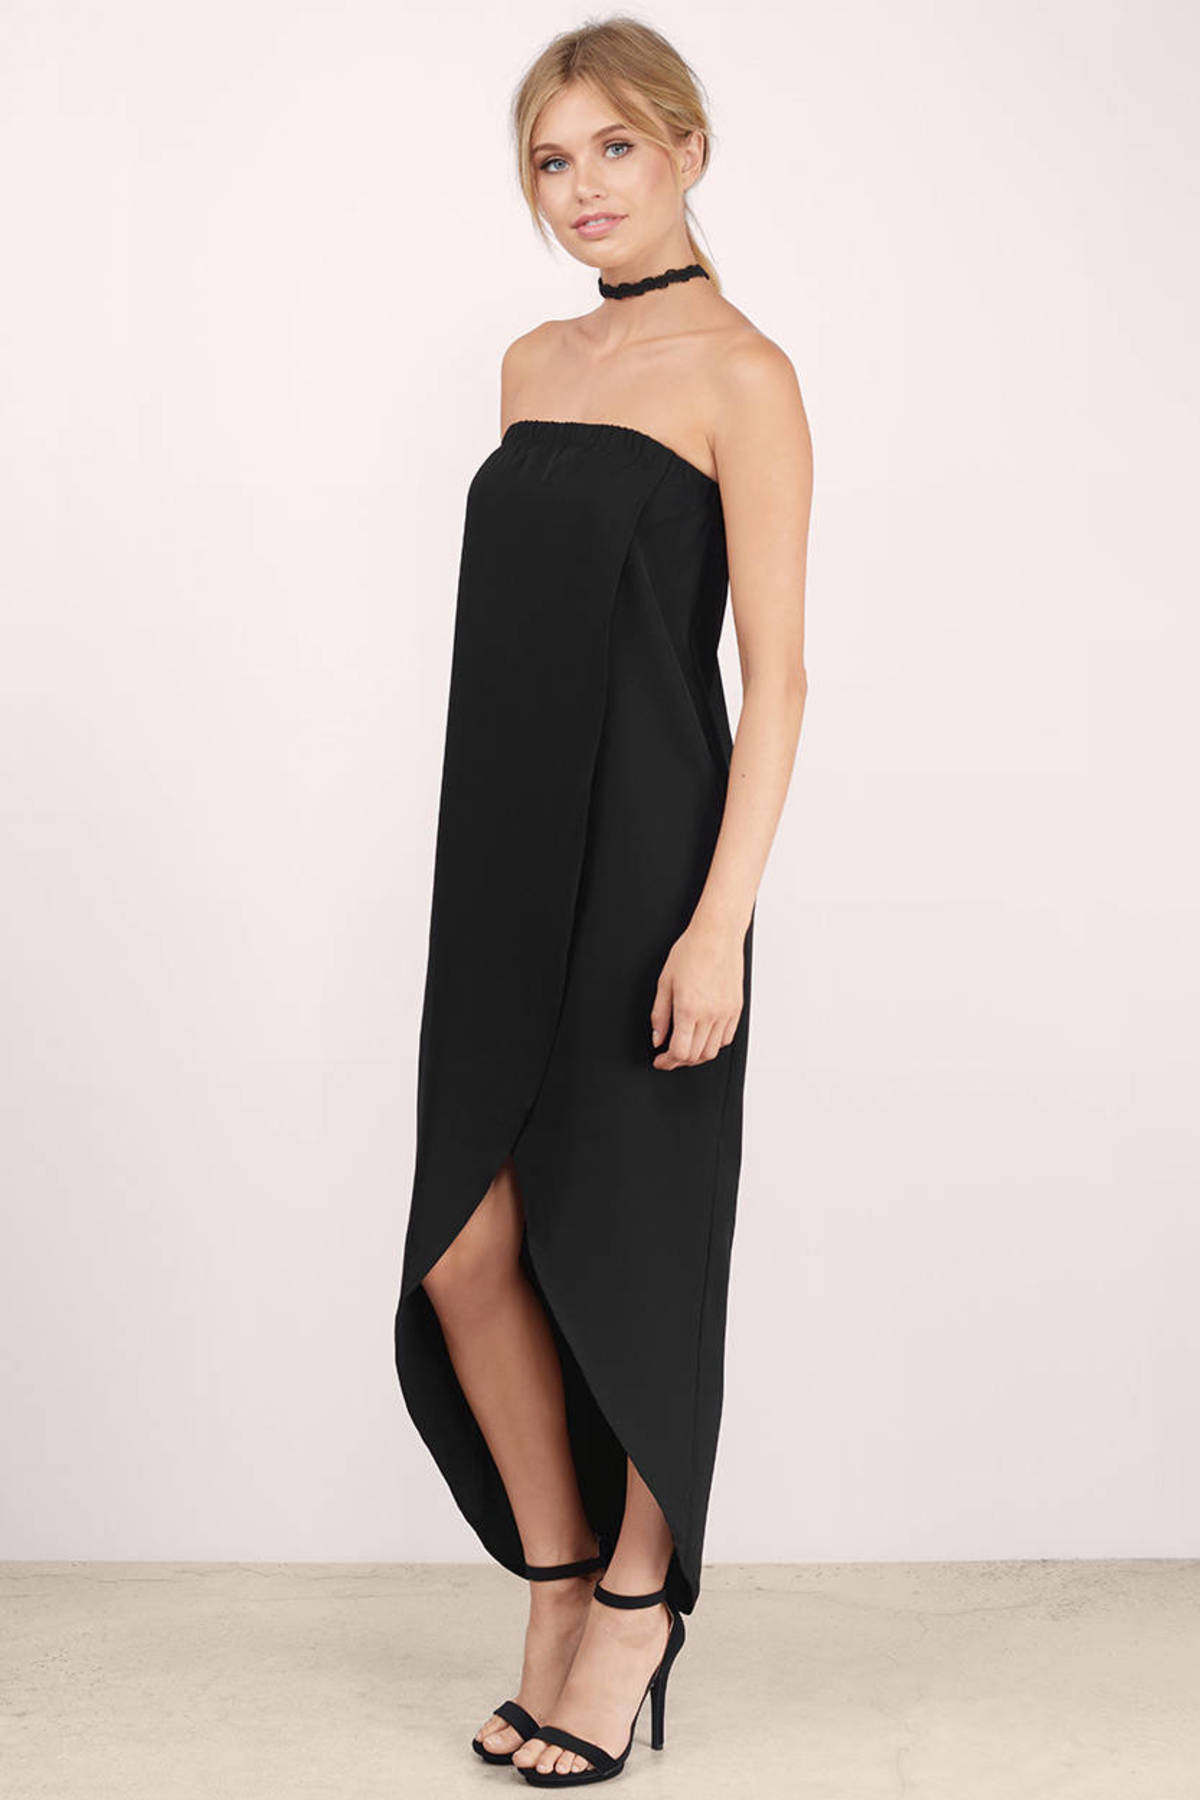 Midi Dresses | White Lace Midi Dress, Black Long Sleeve | Tobi